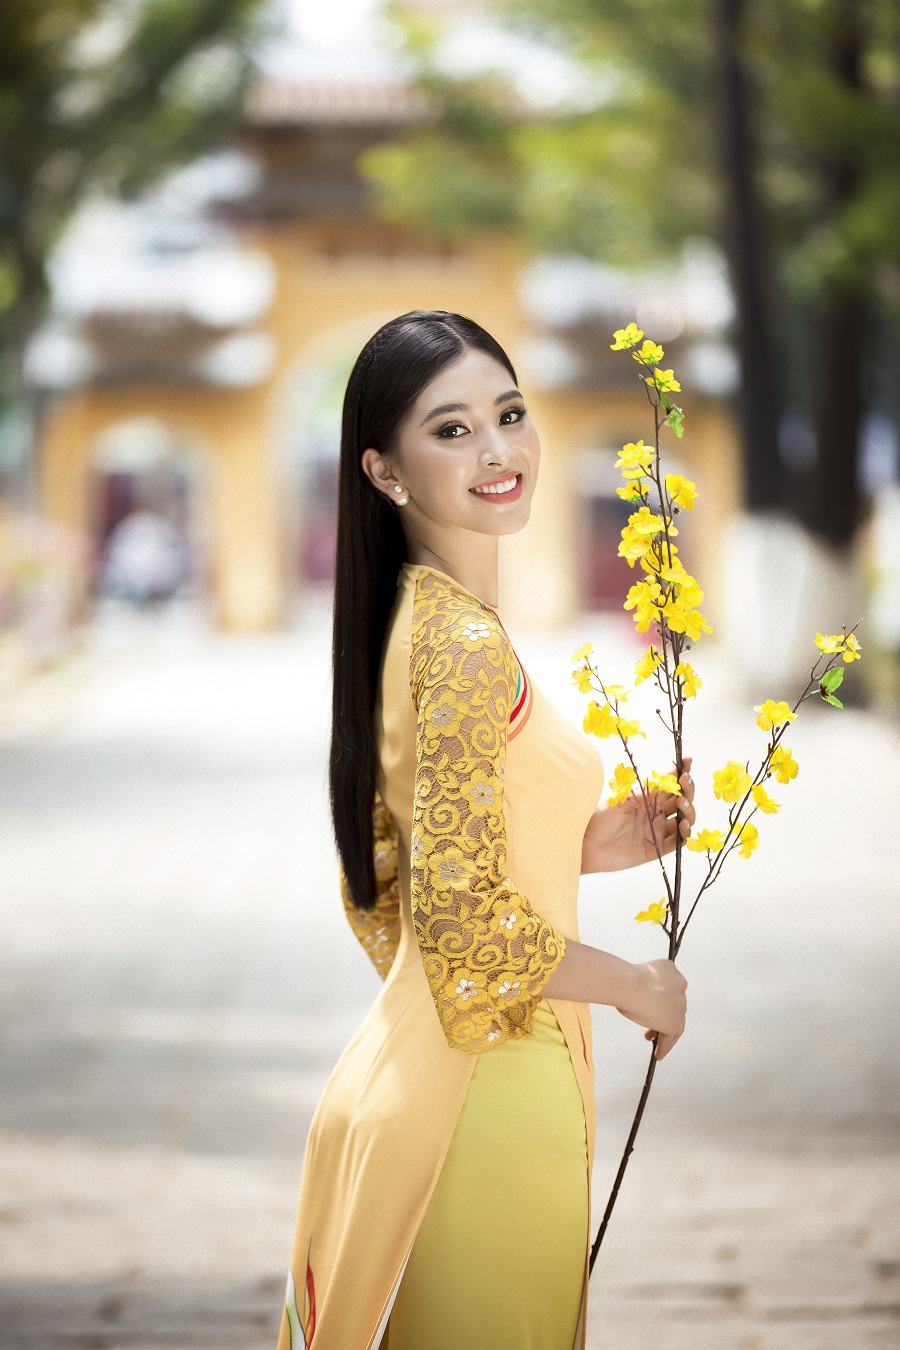 Kể từ khi đăng quang Hoa hậu Việt Nam 2018 và lọt vào Top 30 Miss World 2018, Hoa hậu Tiểu Vy ngày càng được sự ủng hộ của khán giả bởi nhan sắc ngày càng thăng hạng và sự xuất hiện liên tục từ các sự kiện giải trí và cộng đồng.